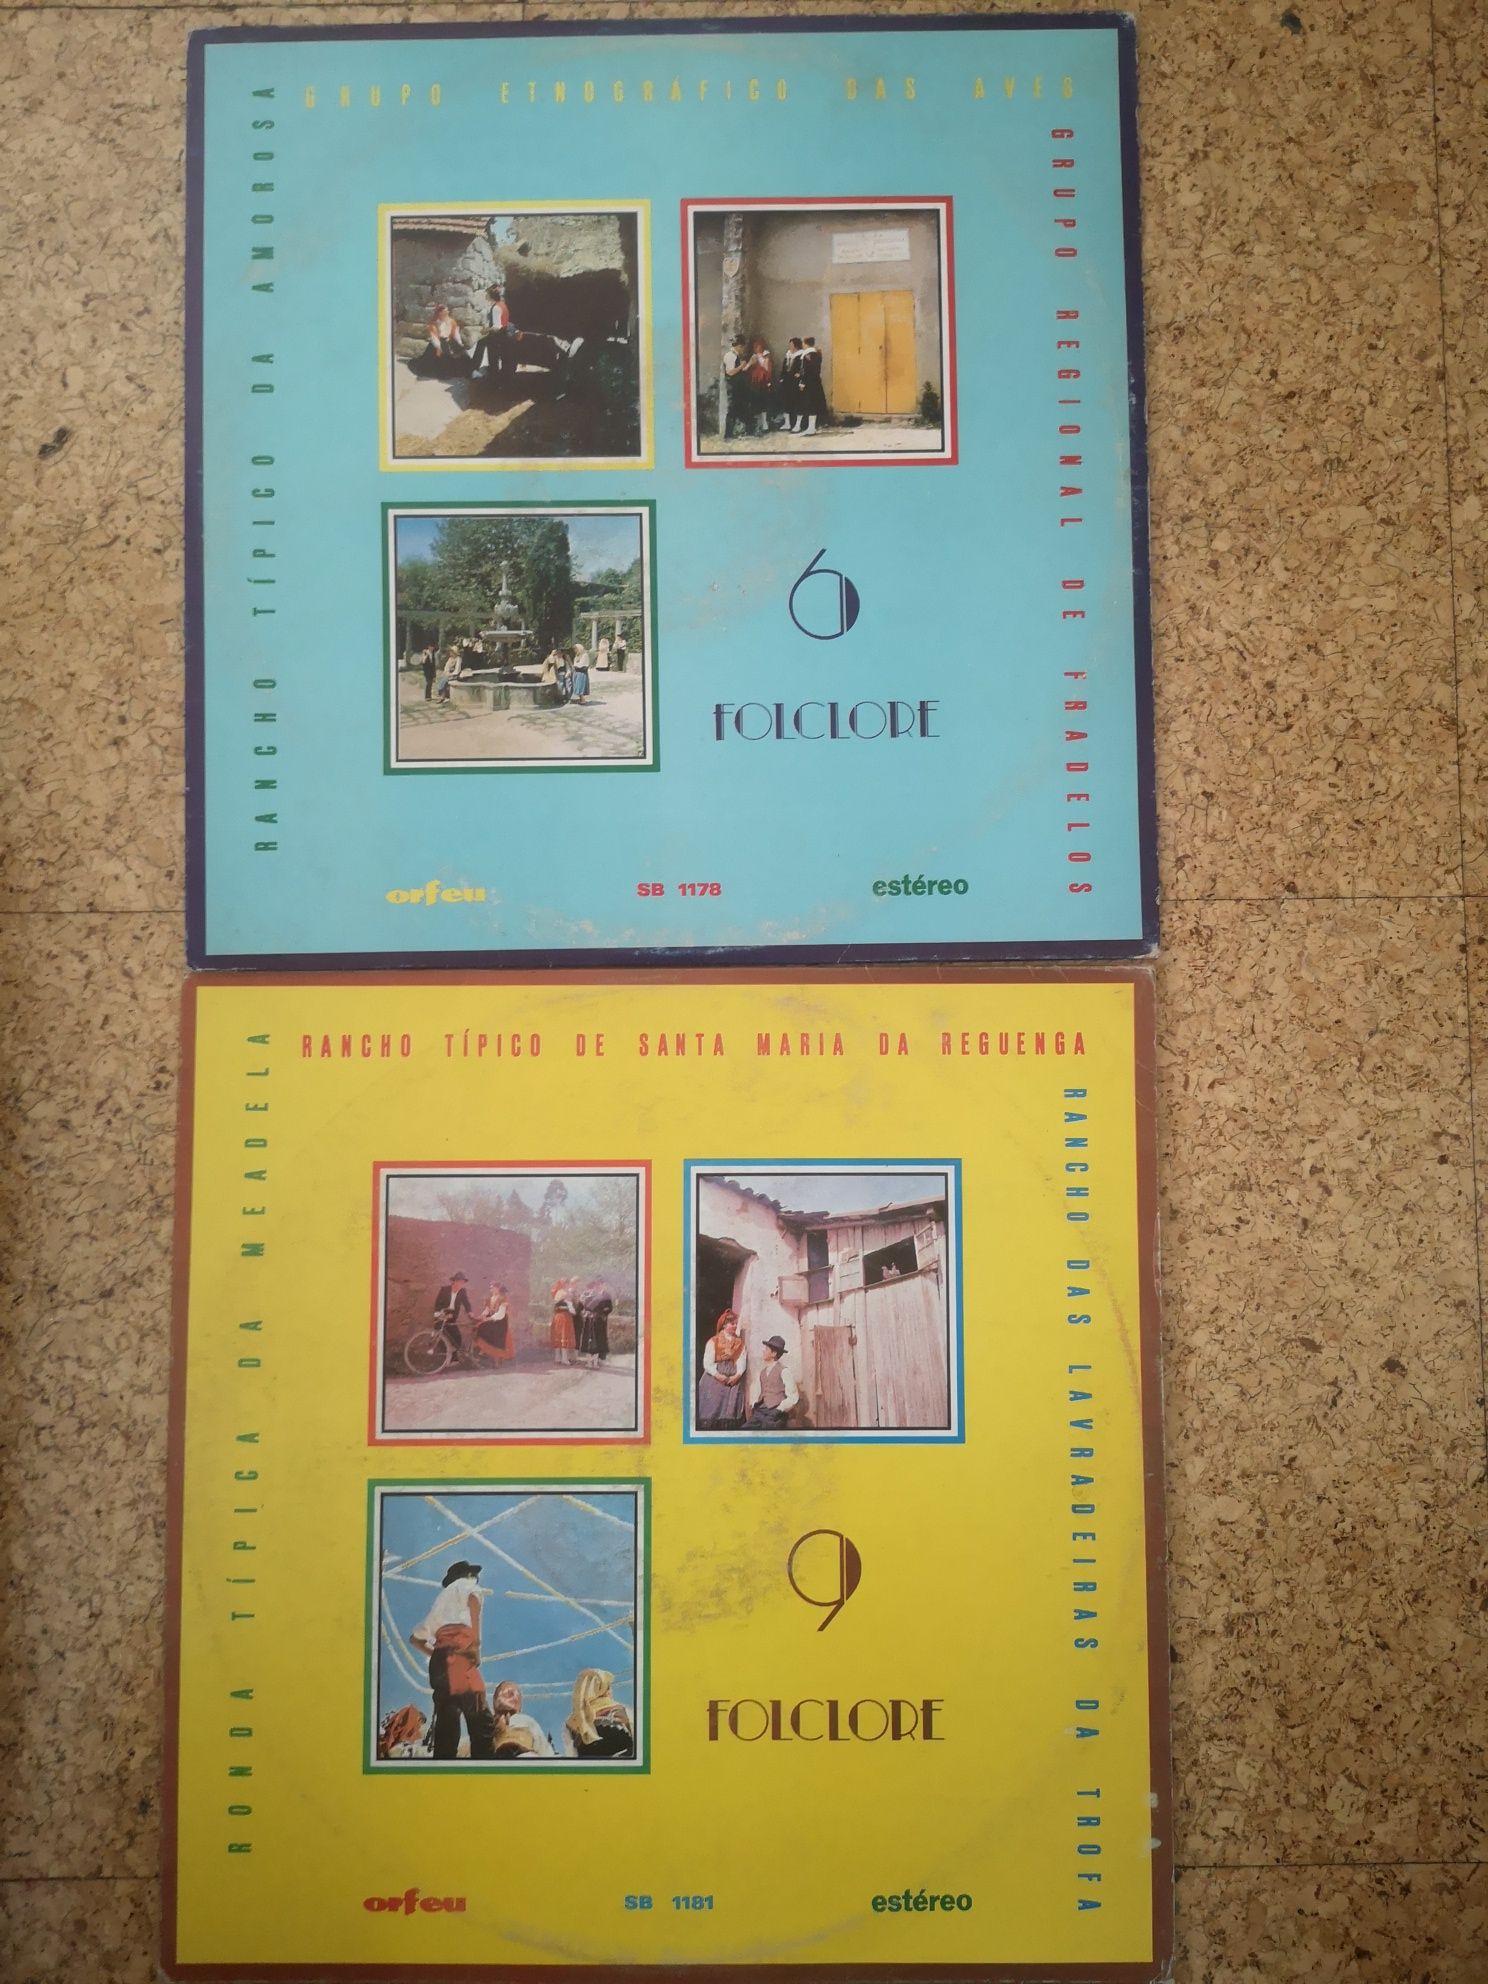 2 discos de vinil da coleção de Folclore da editora Orfeu.